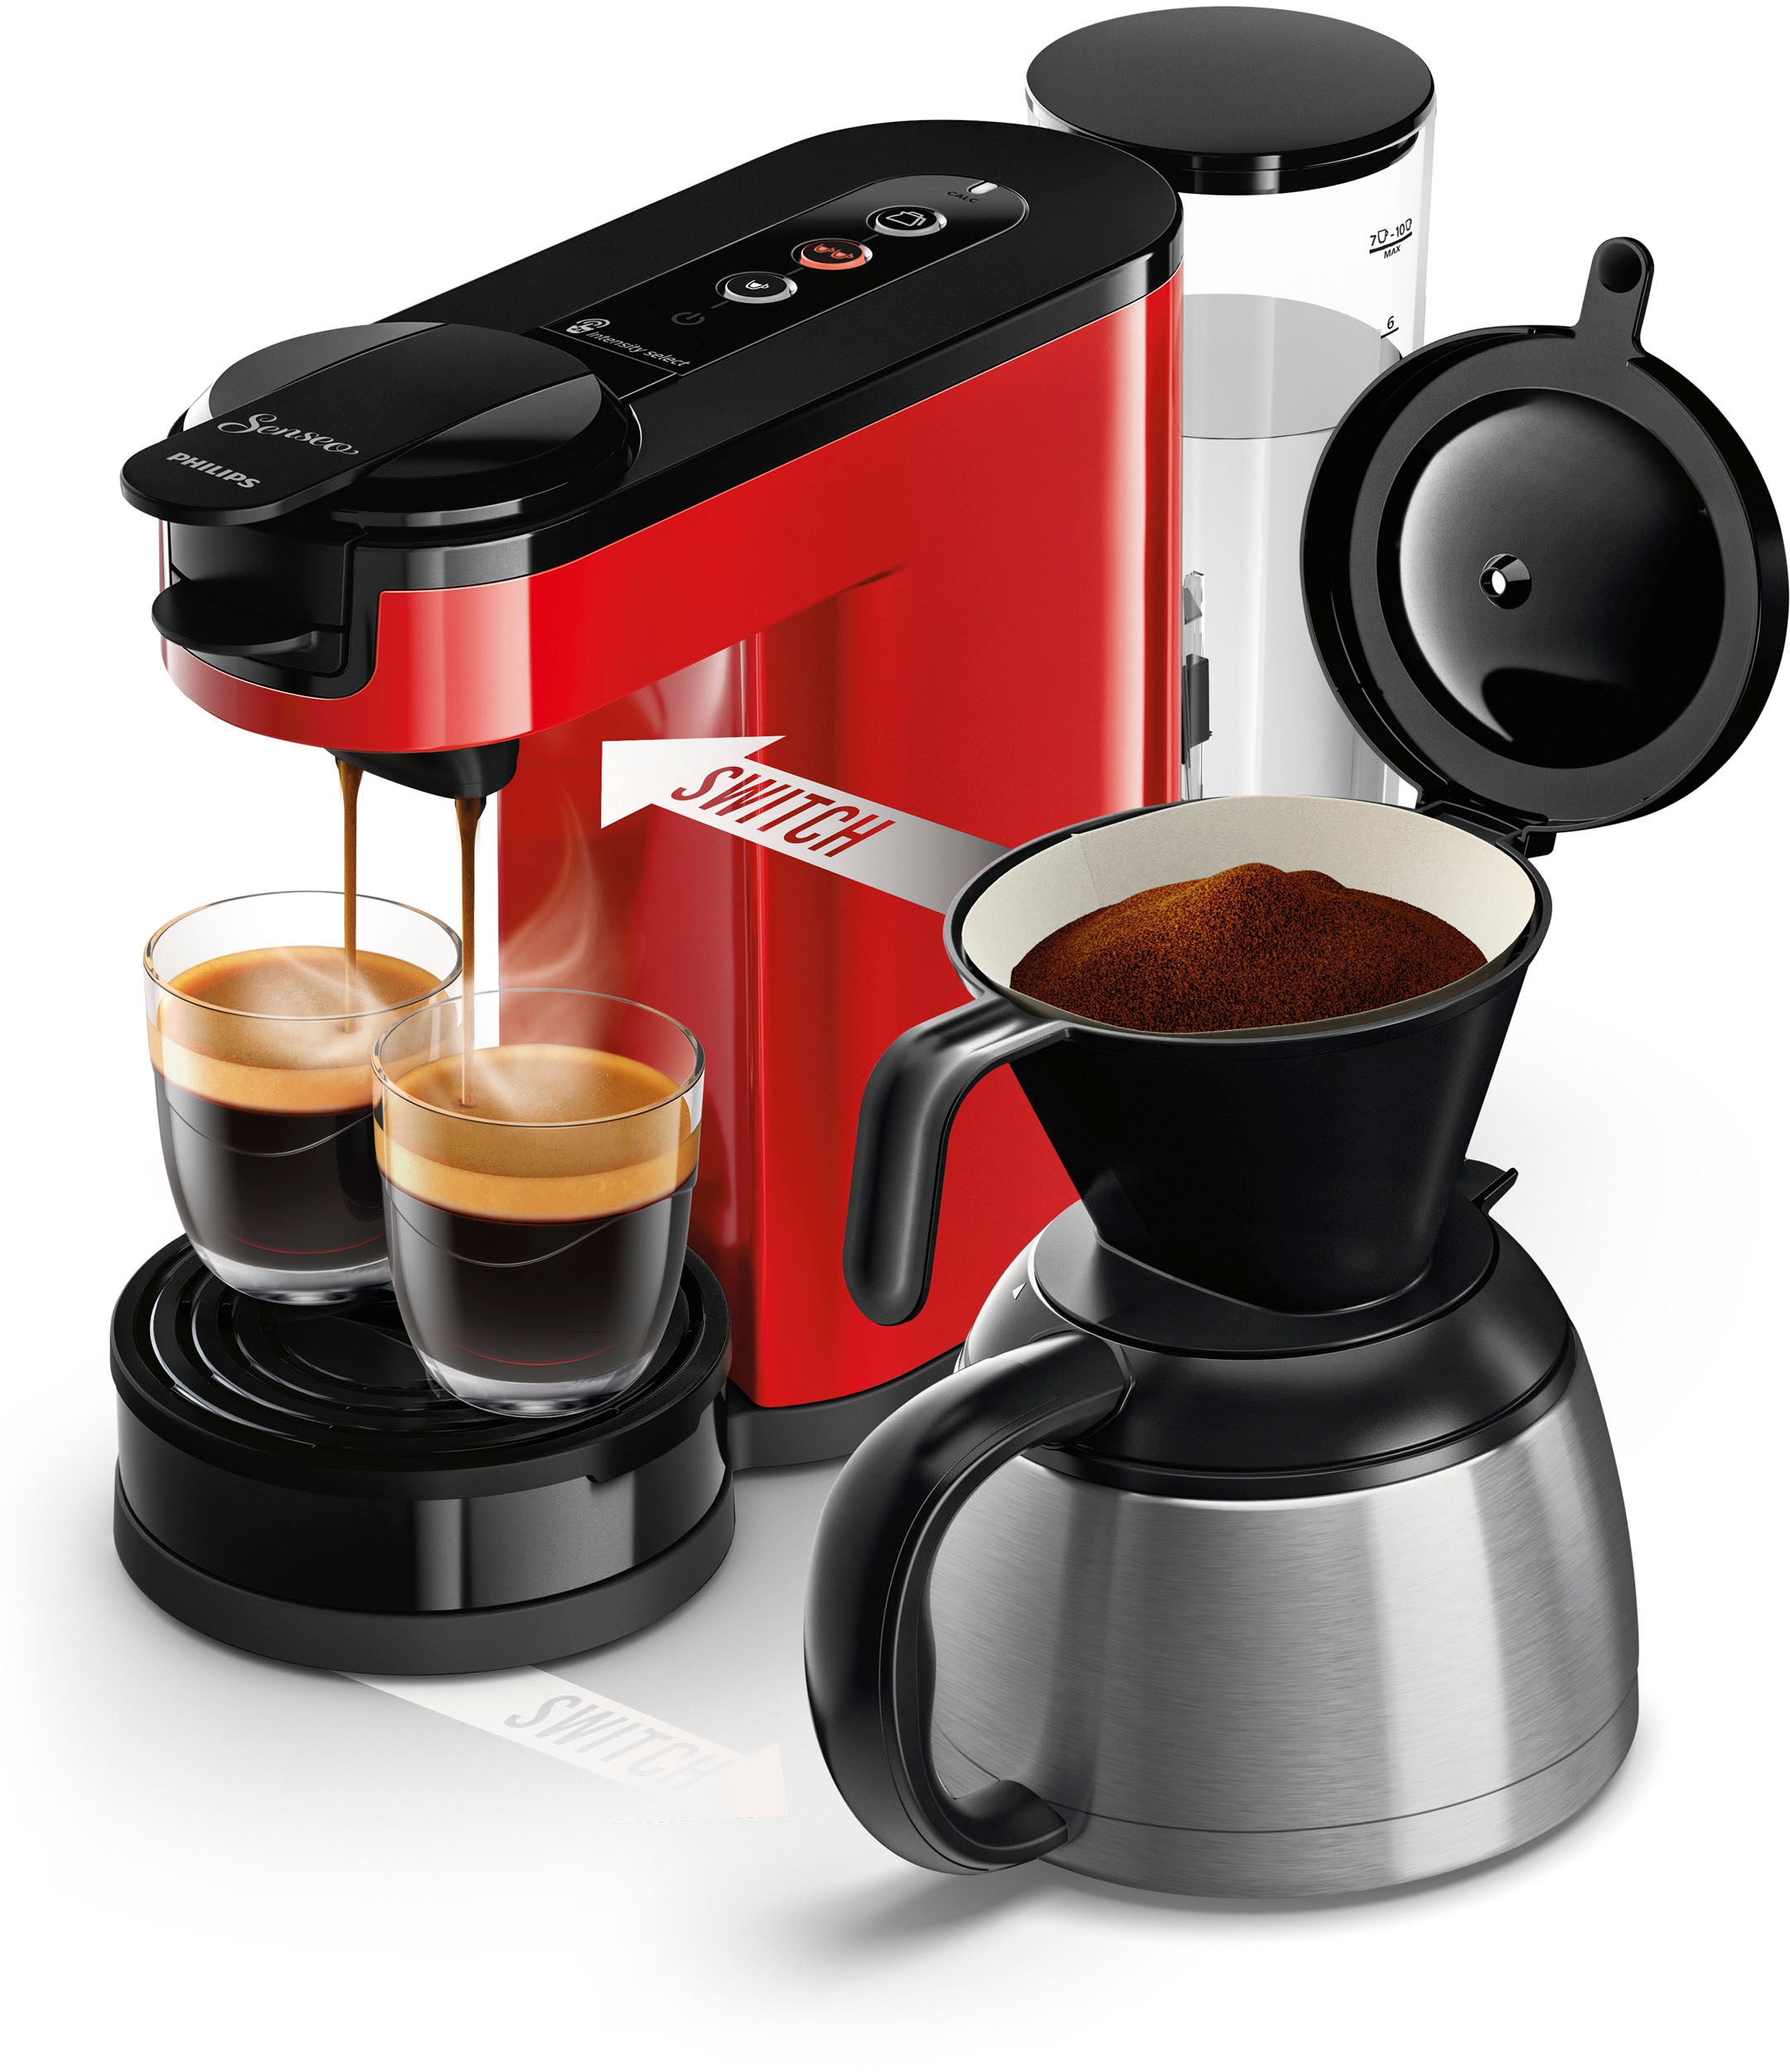 online 9,90 »Switch Kaffeepadmaschine Wert im von HD6592/84«, UVP Kaffeekanne, inkl. € Kaffeepaddose bei 1 l Senseo Philips